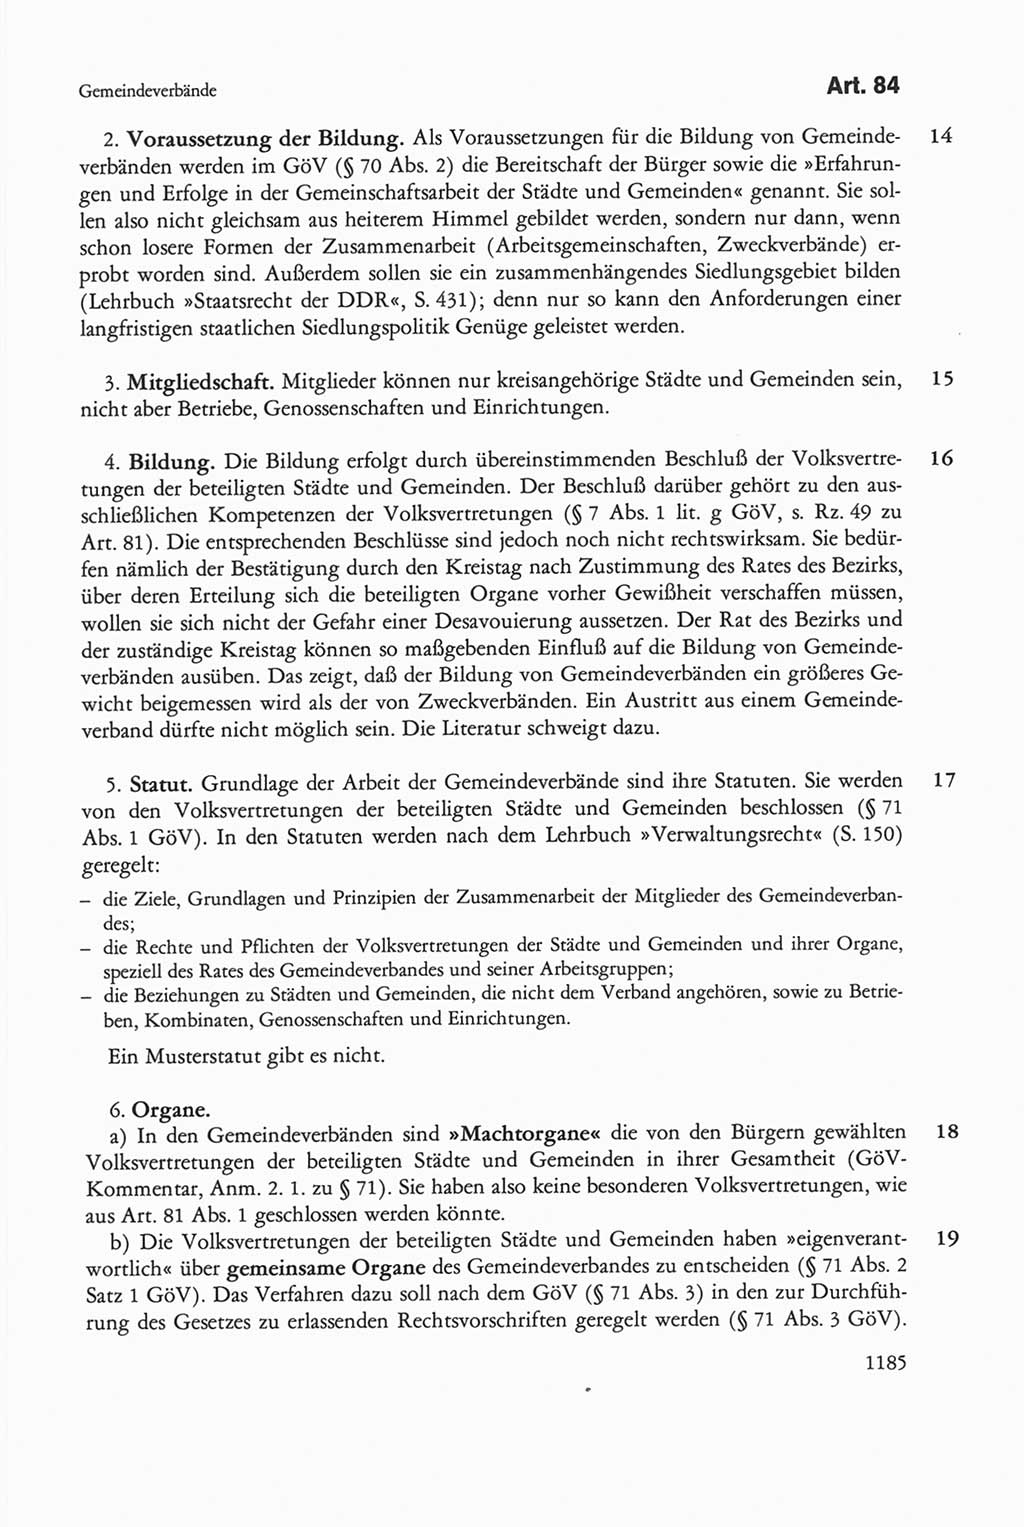 Die sozialistische Verfassung der Deutschen Demokratischen Republik (DDR), Kommentar mit einem Nachtrag 1997, Seite 1185 (Soz. Verf. DDR Komm. Nachtr. 1997, S. 1185)